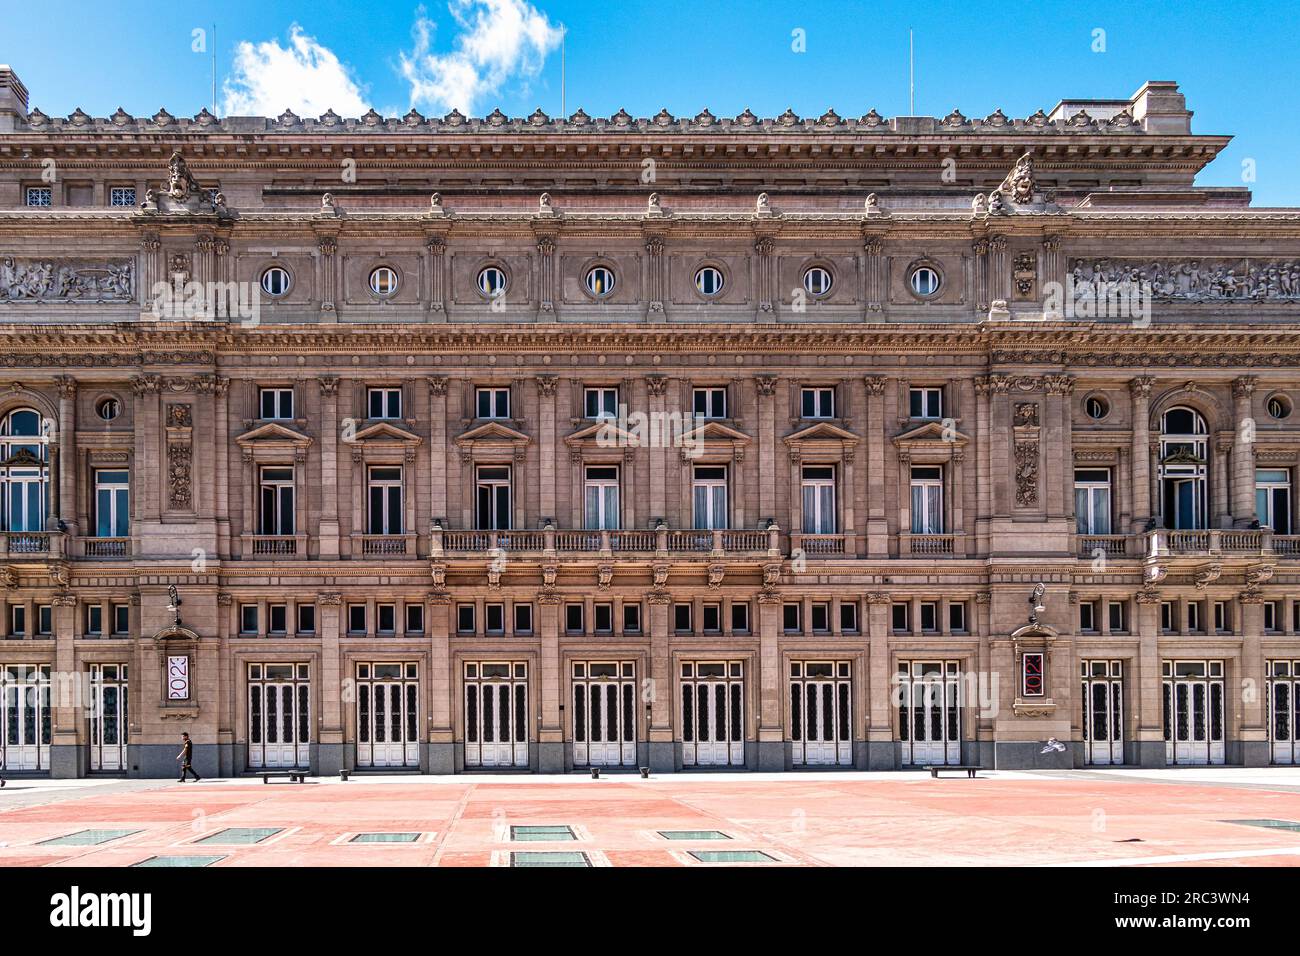 Teatro Colon, Colon Theater, eines der weltweit besten Opernhäuser, das kulturelle Symbol von Buenos Aires, ursprünglich eröffnet 1857, Buenos Aires, Argentinien Stockfoto